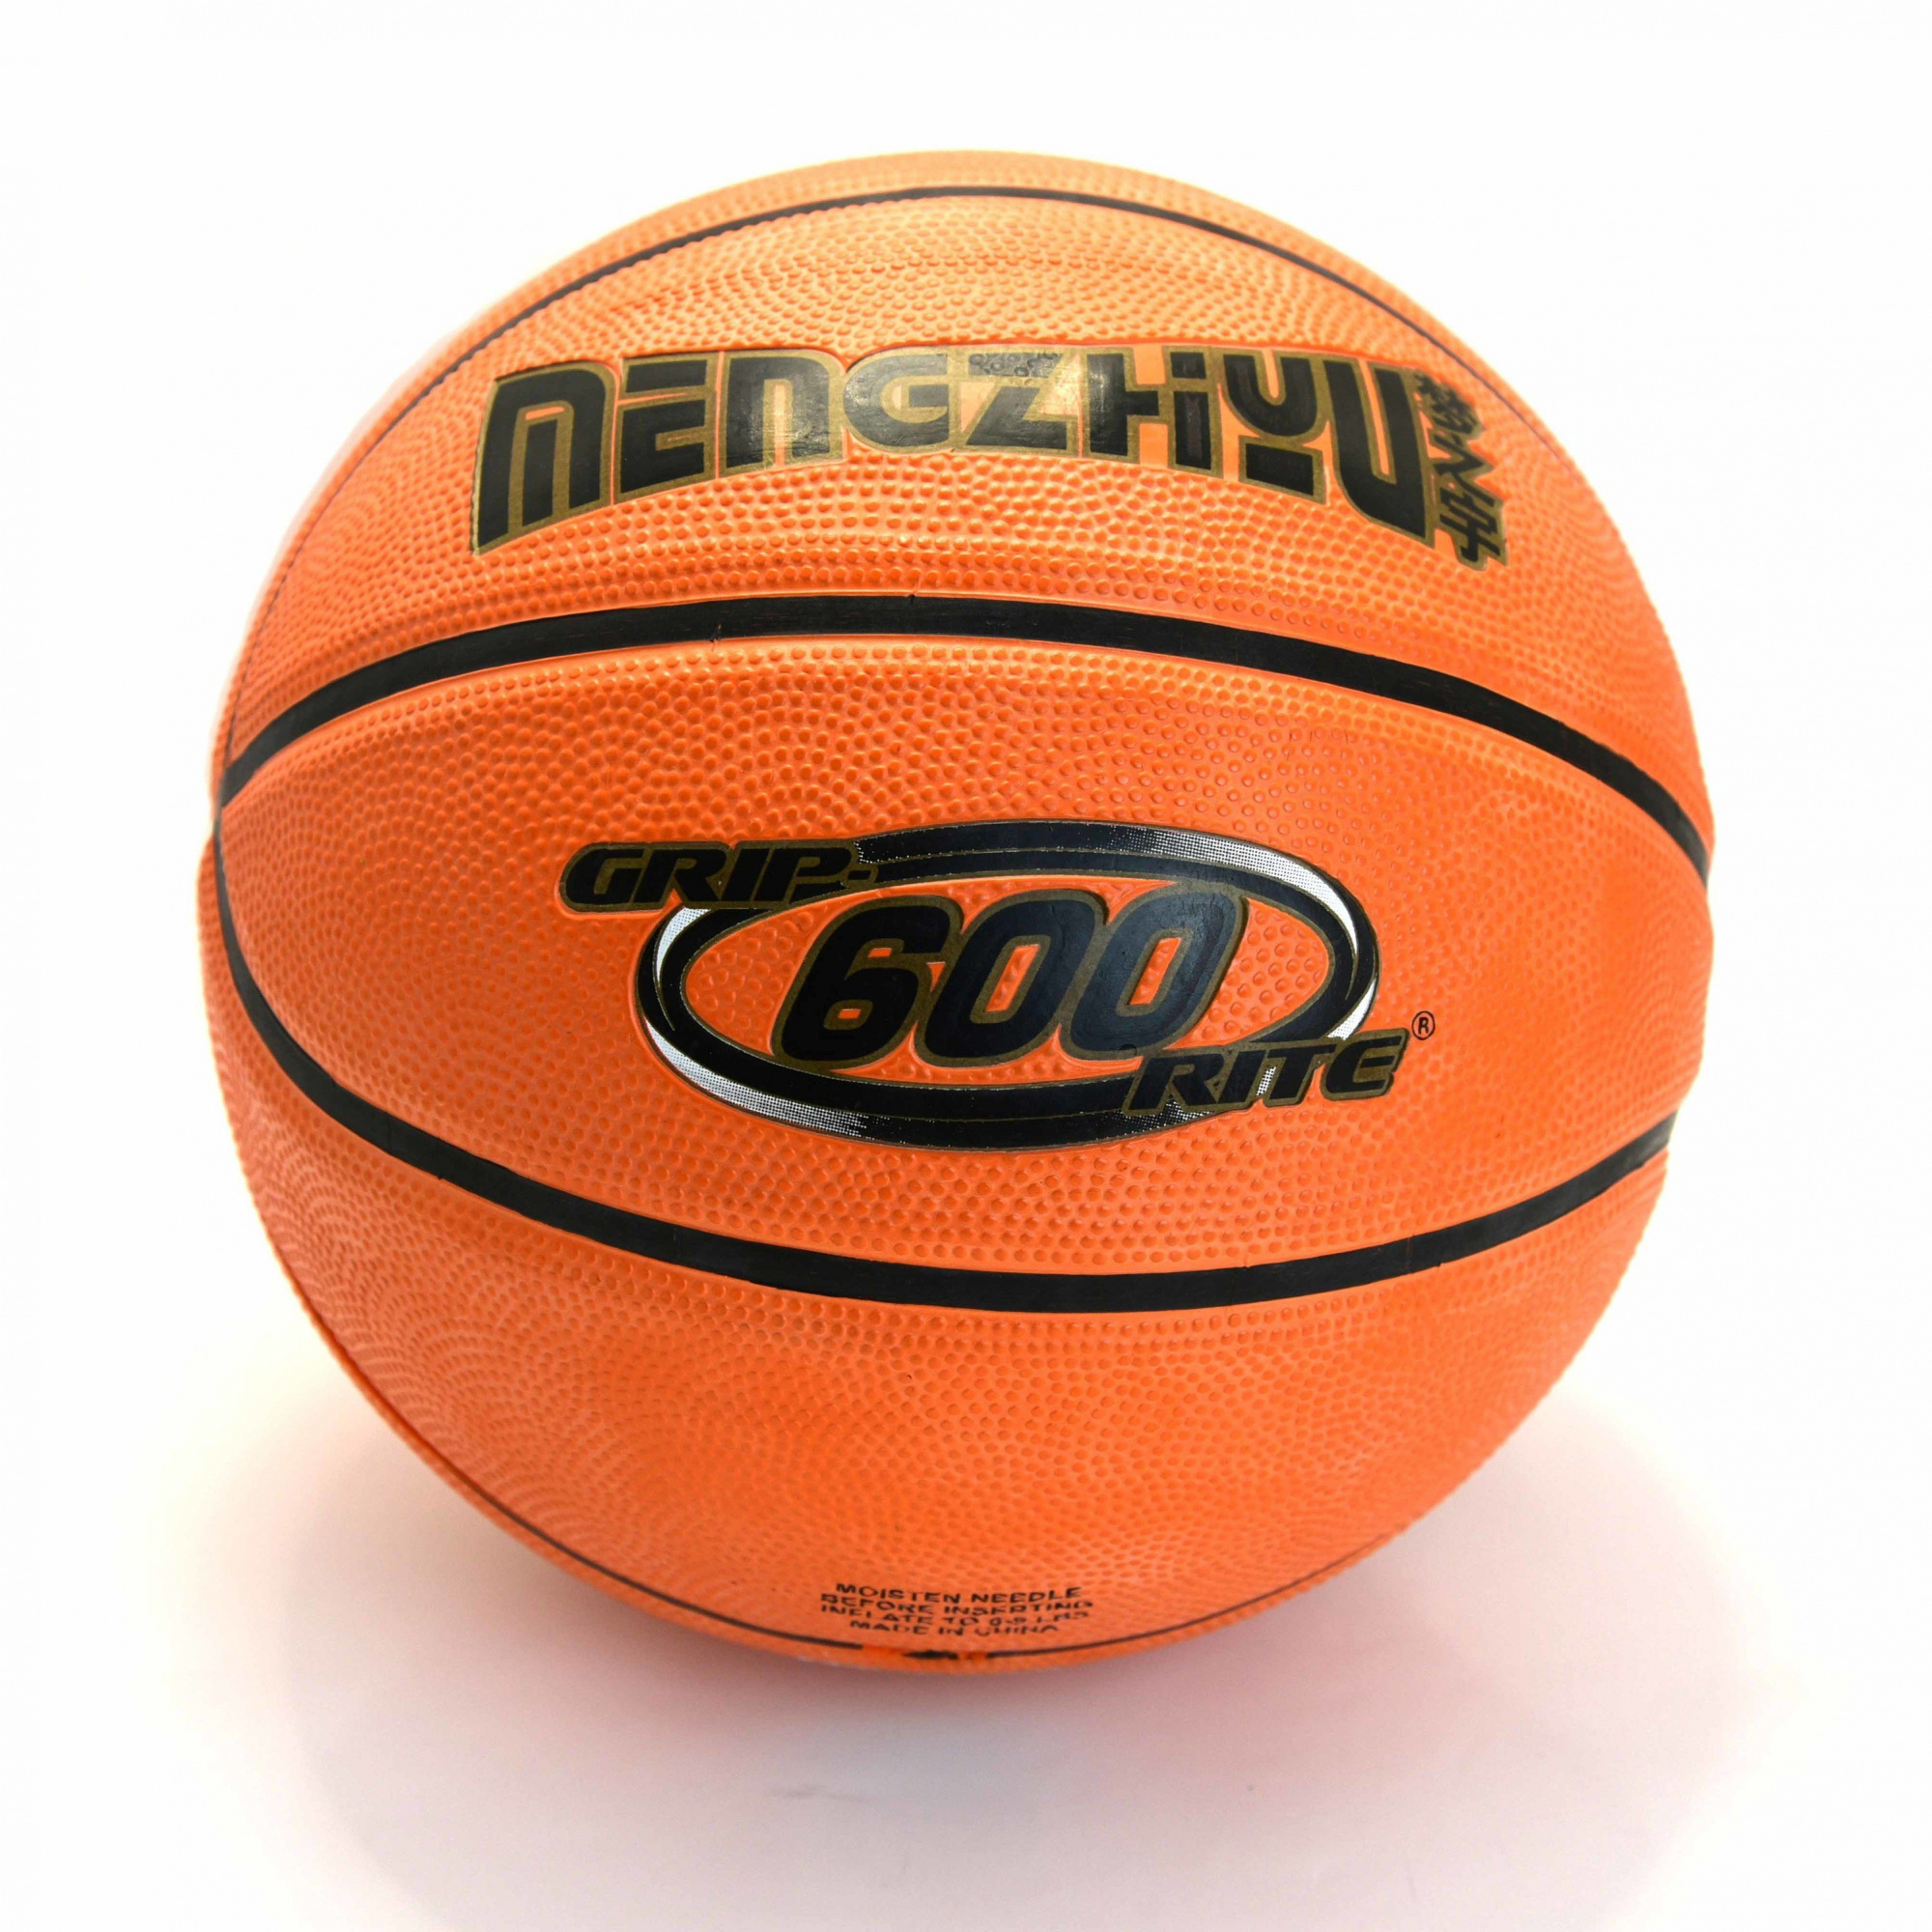 Мяч баскетбольный CLIFF 7, G600, резина